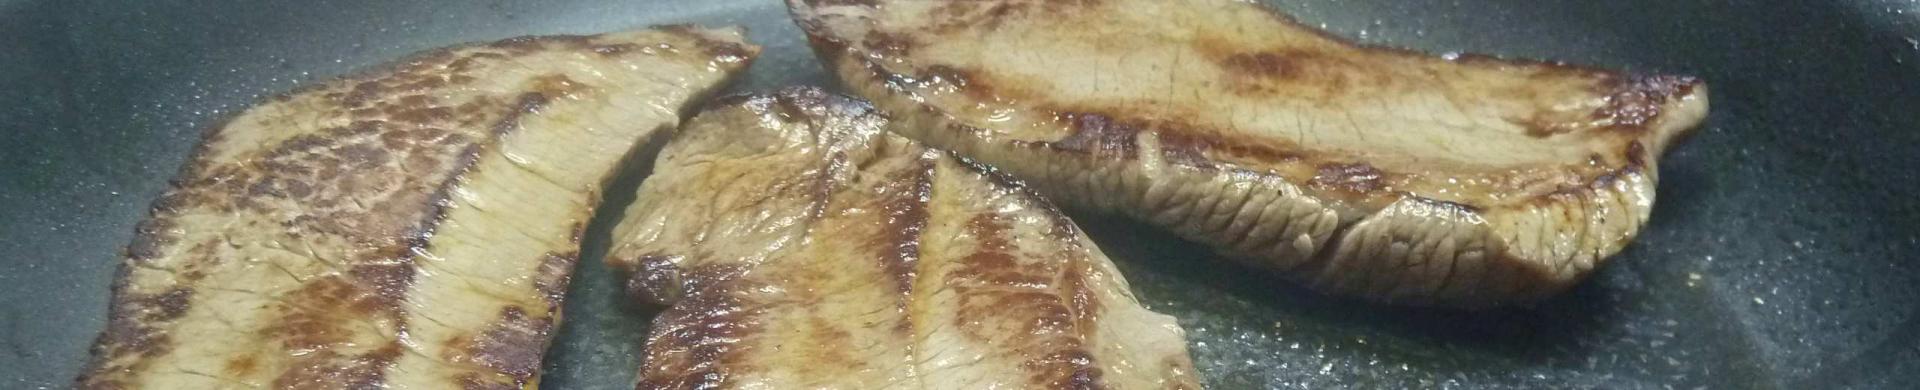 Steak aux echalotes miam